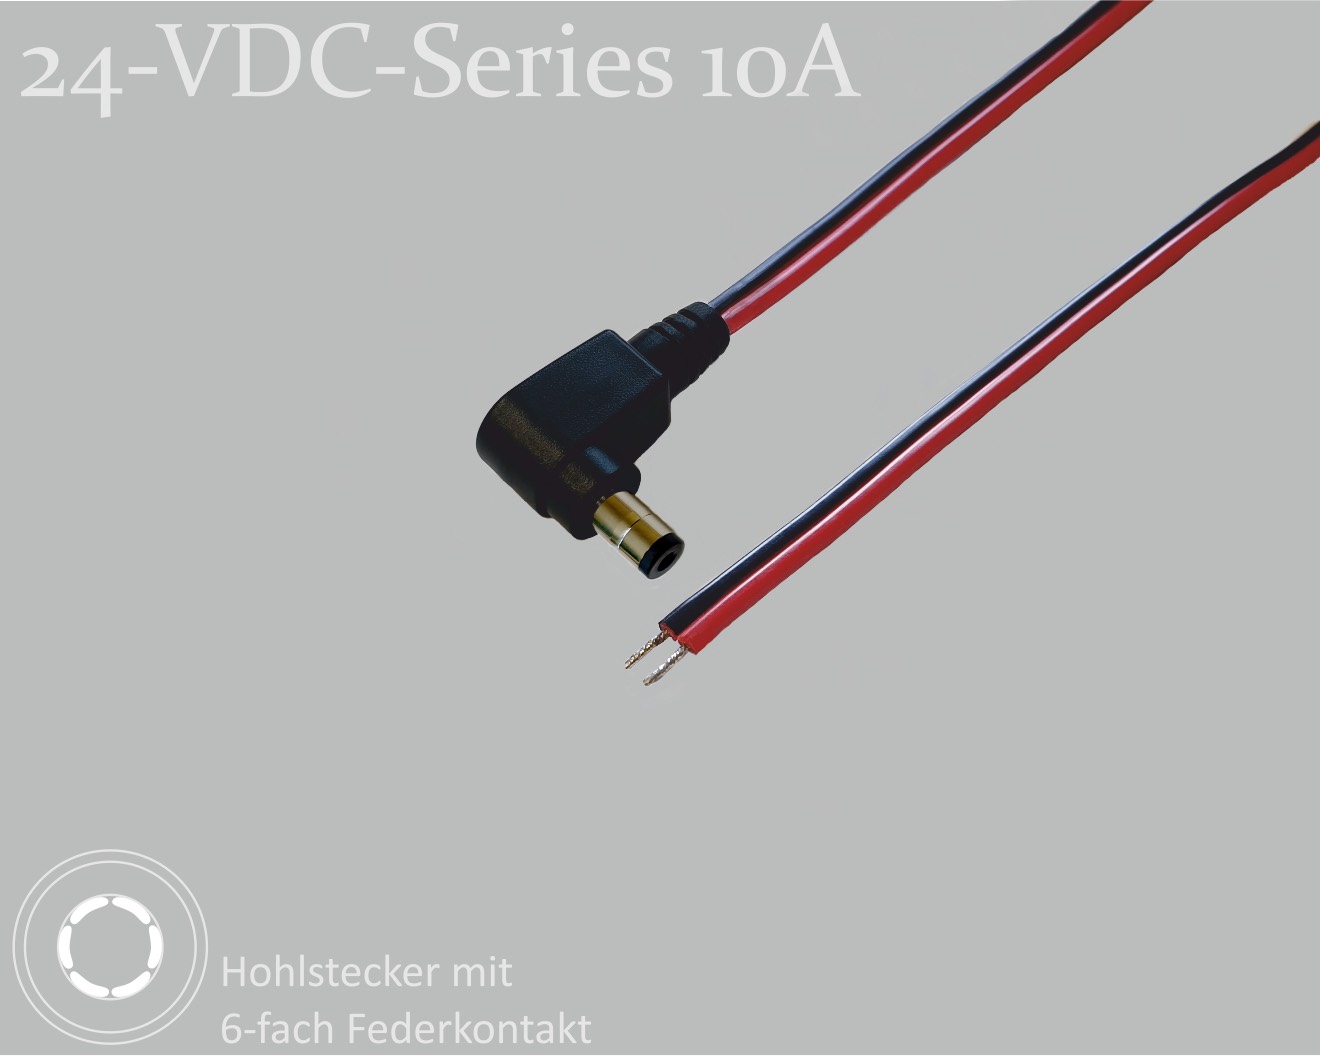 24-VDC-Series 10A, DC-Anschlusskabel, DC-Winkelstecker mit 6-Feder-Kontakt 2,5x5,5x9,5mm, Flachkabel 2x0,75mm², rot/schwarz, verzinnte Enden, 1,5m